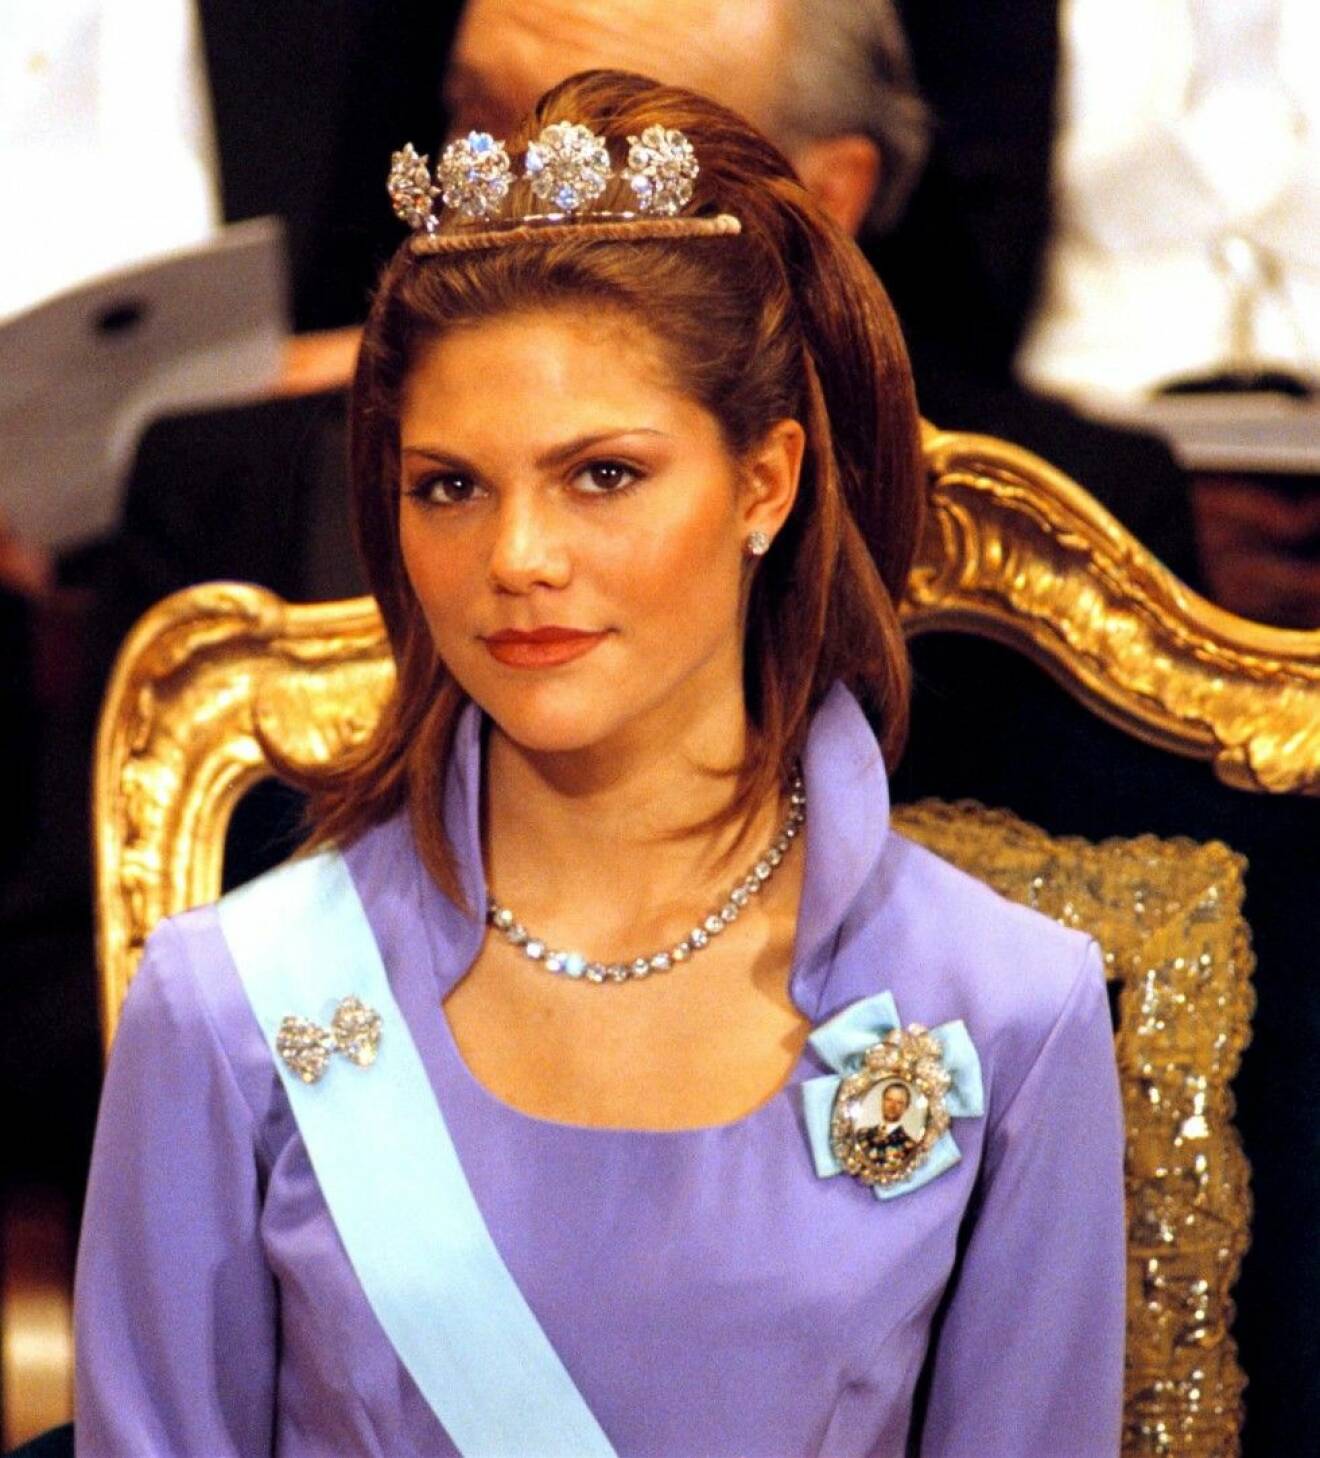 Prinsessan Victoria, Nobel 1997. (c) Anders Jahrner / IBL